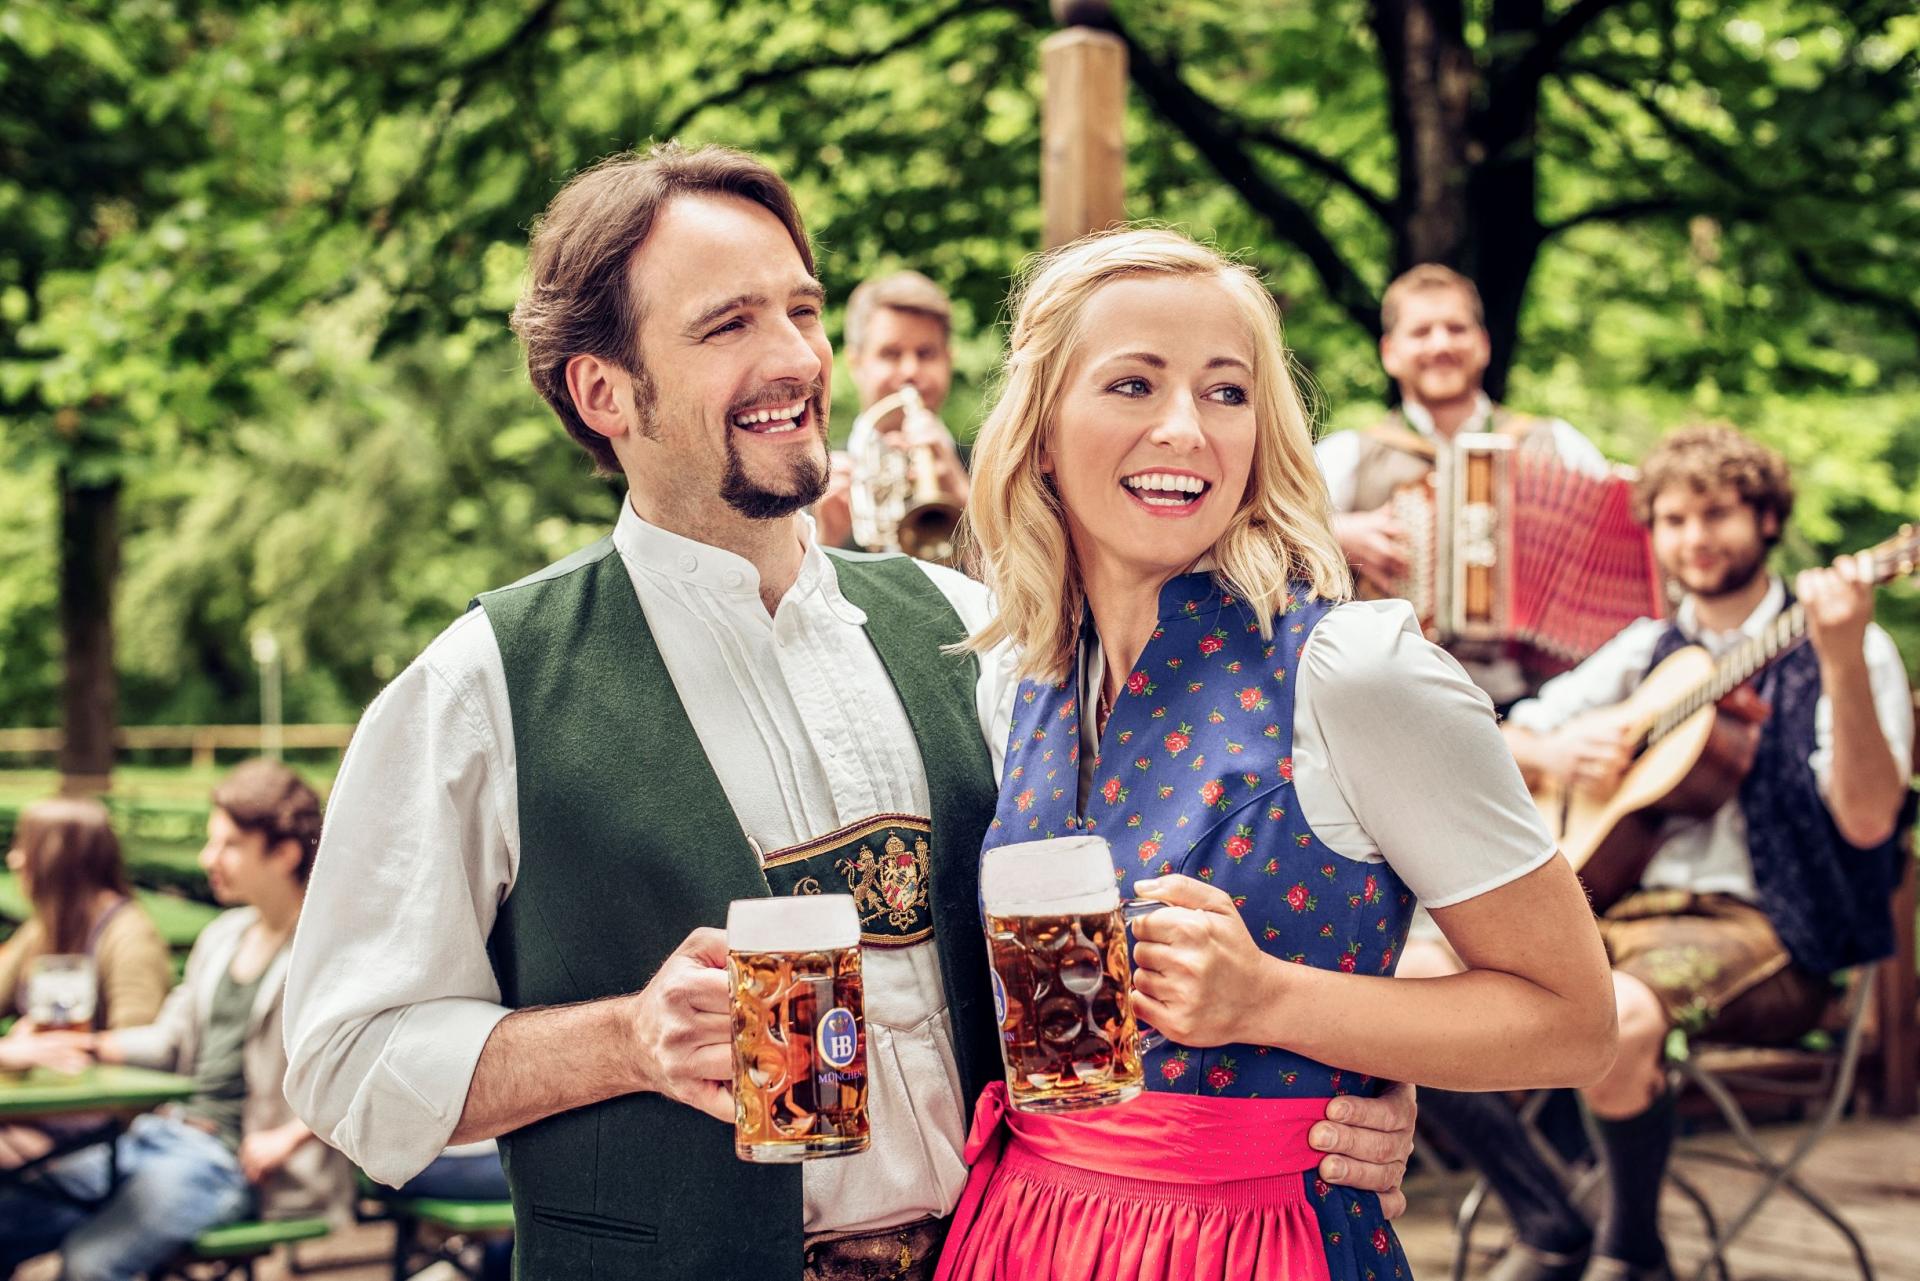 The beers of Hofbräu Munich - What A Pleasure